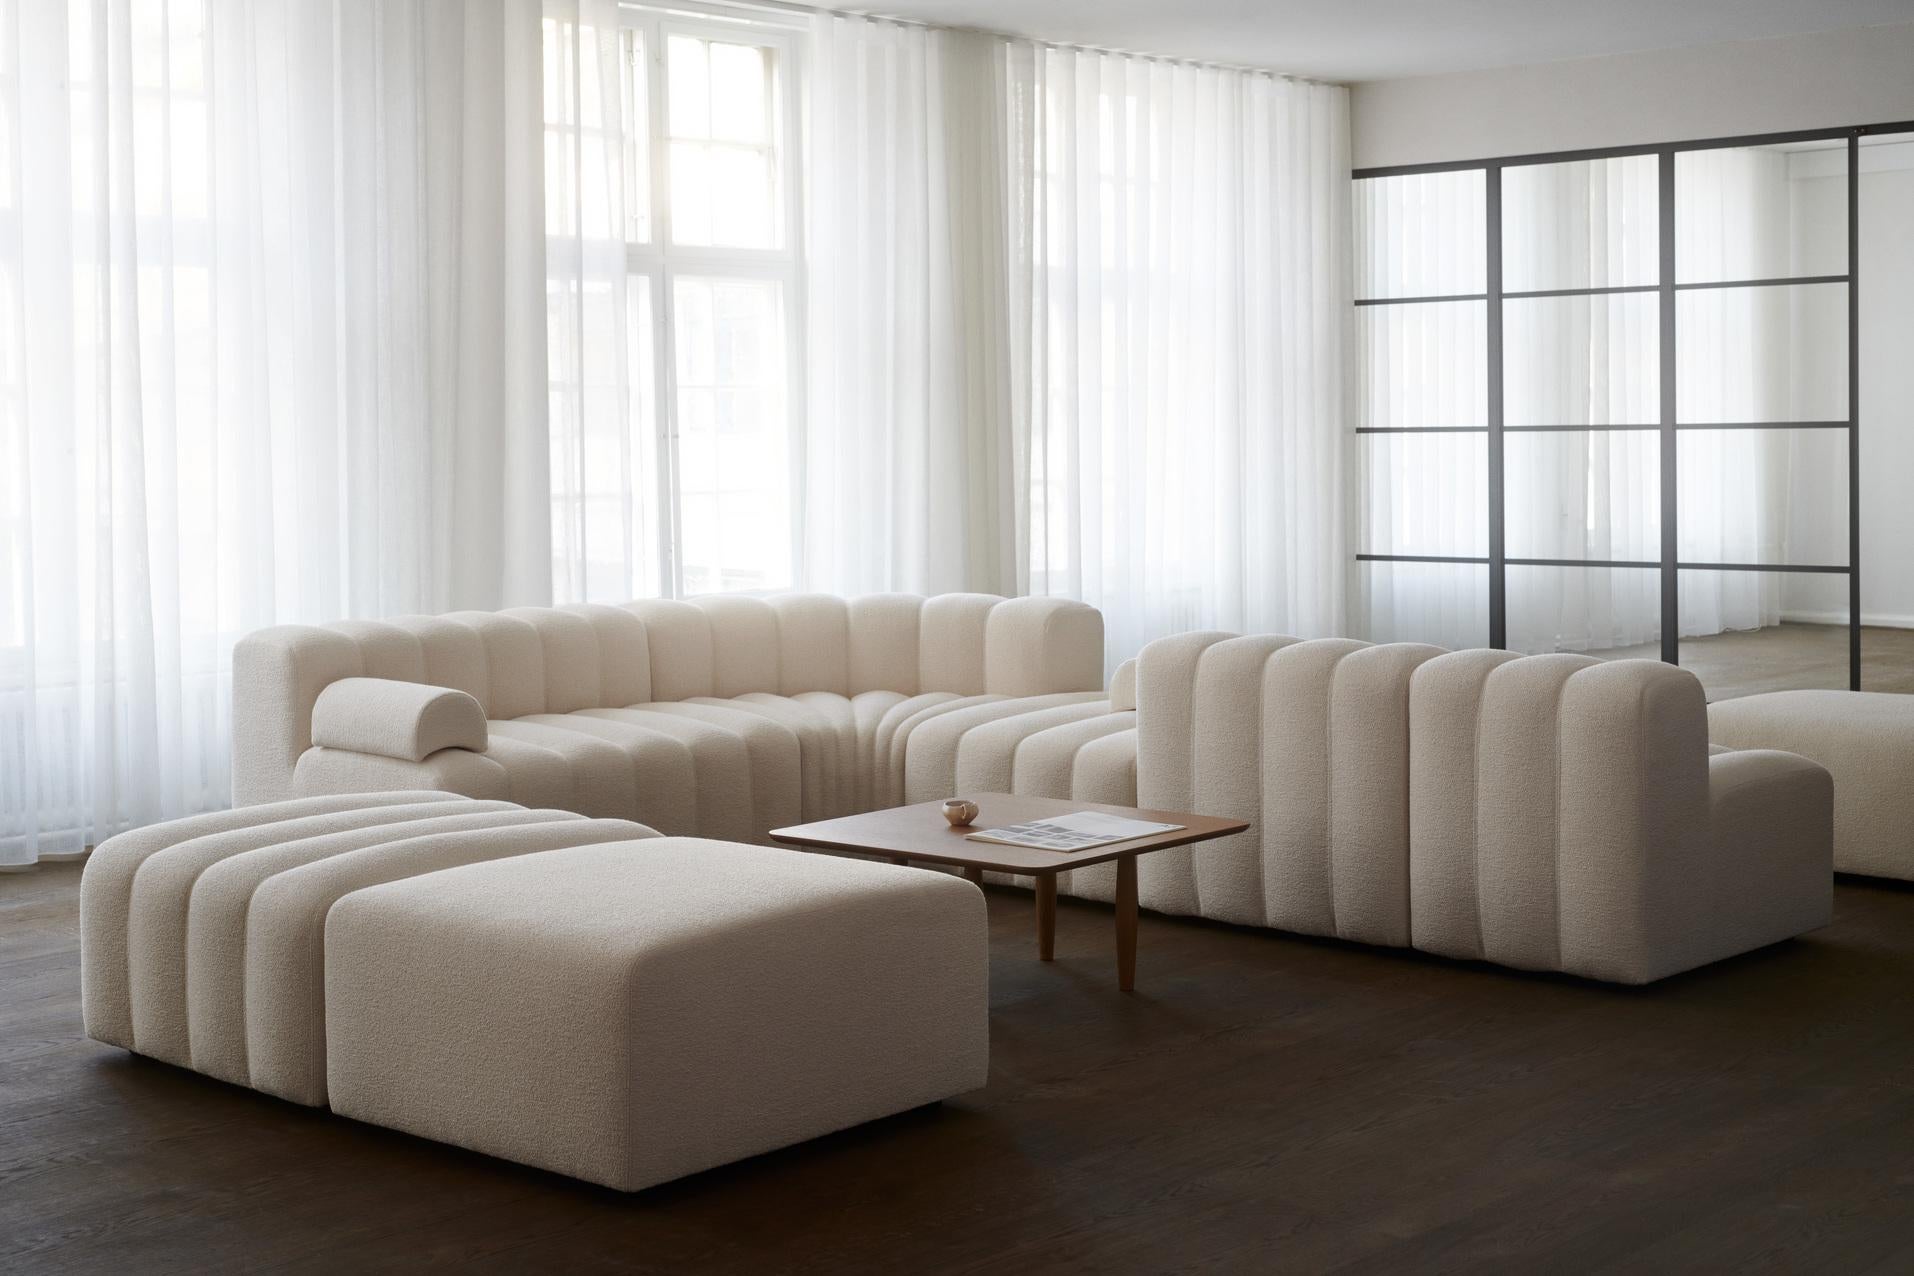 Mousse Canapé « Studio » de Norr11, canapé modulaire, lot de 4, blanc en vente